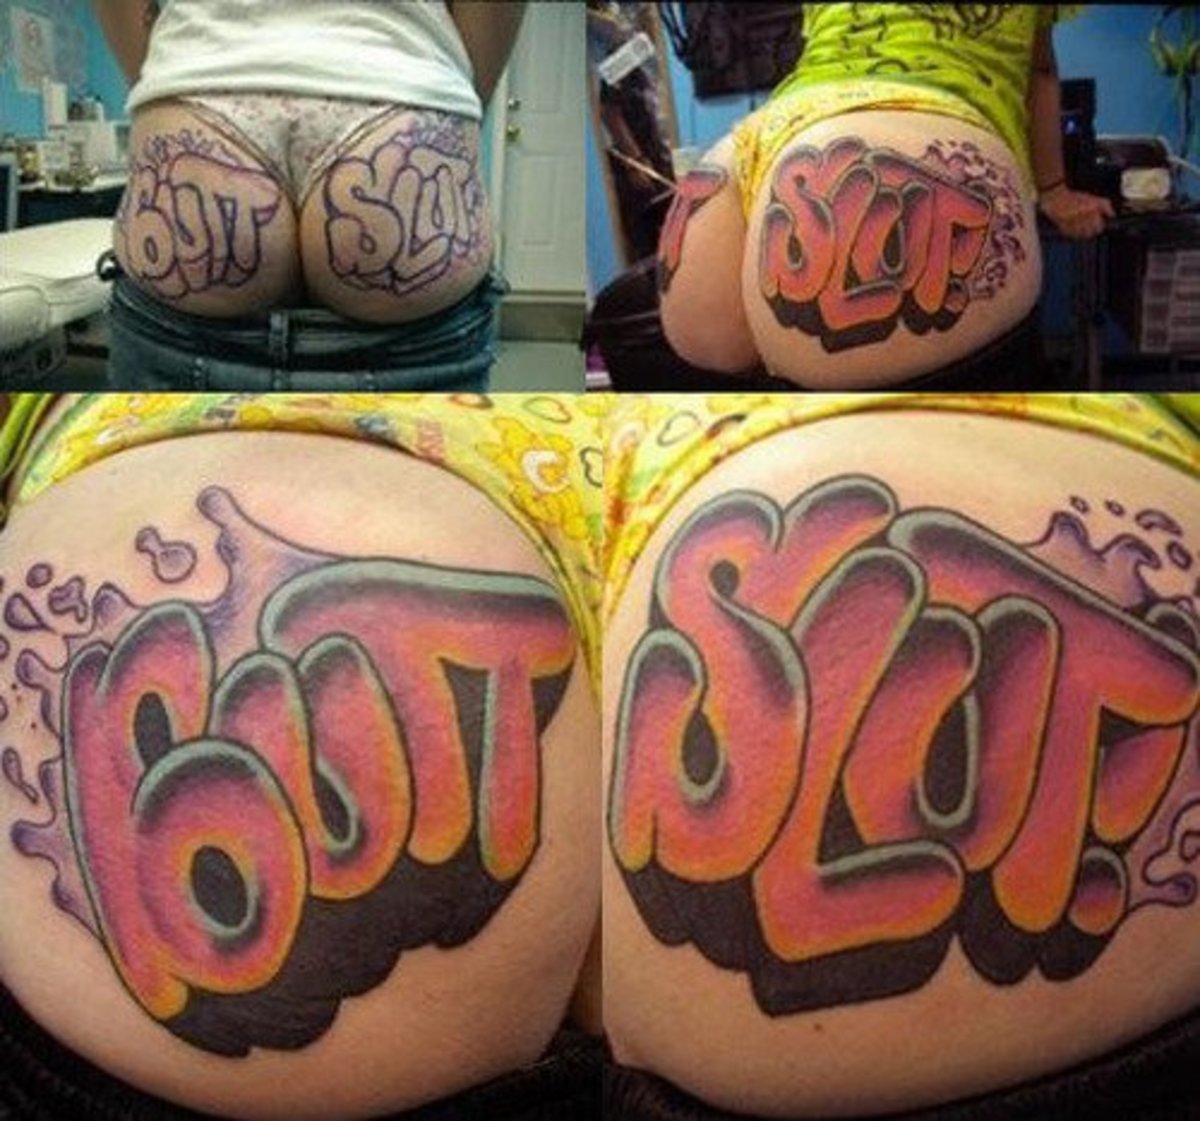 Bad-Tattoos-Butt-Slut